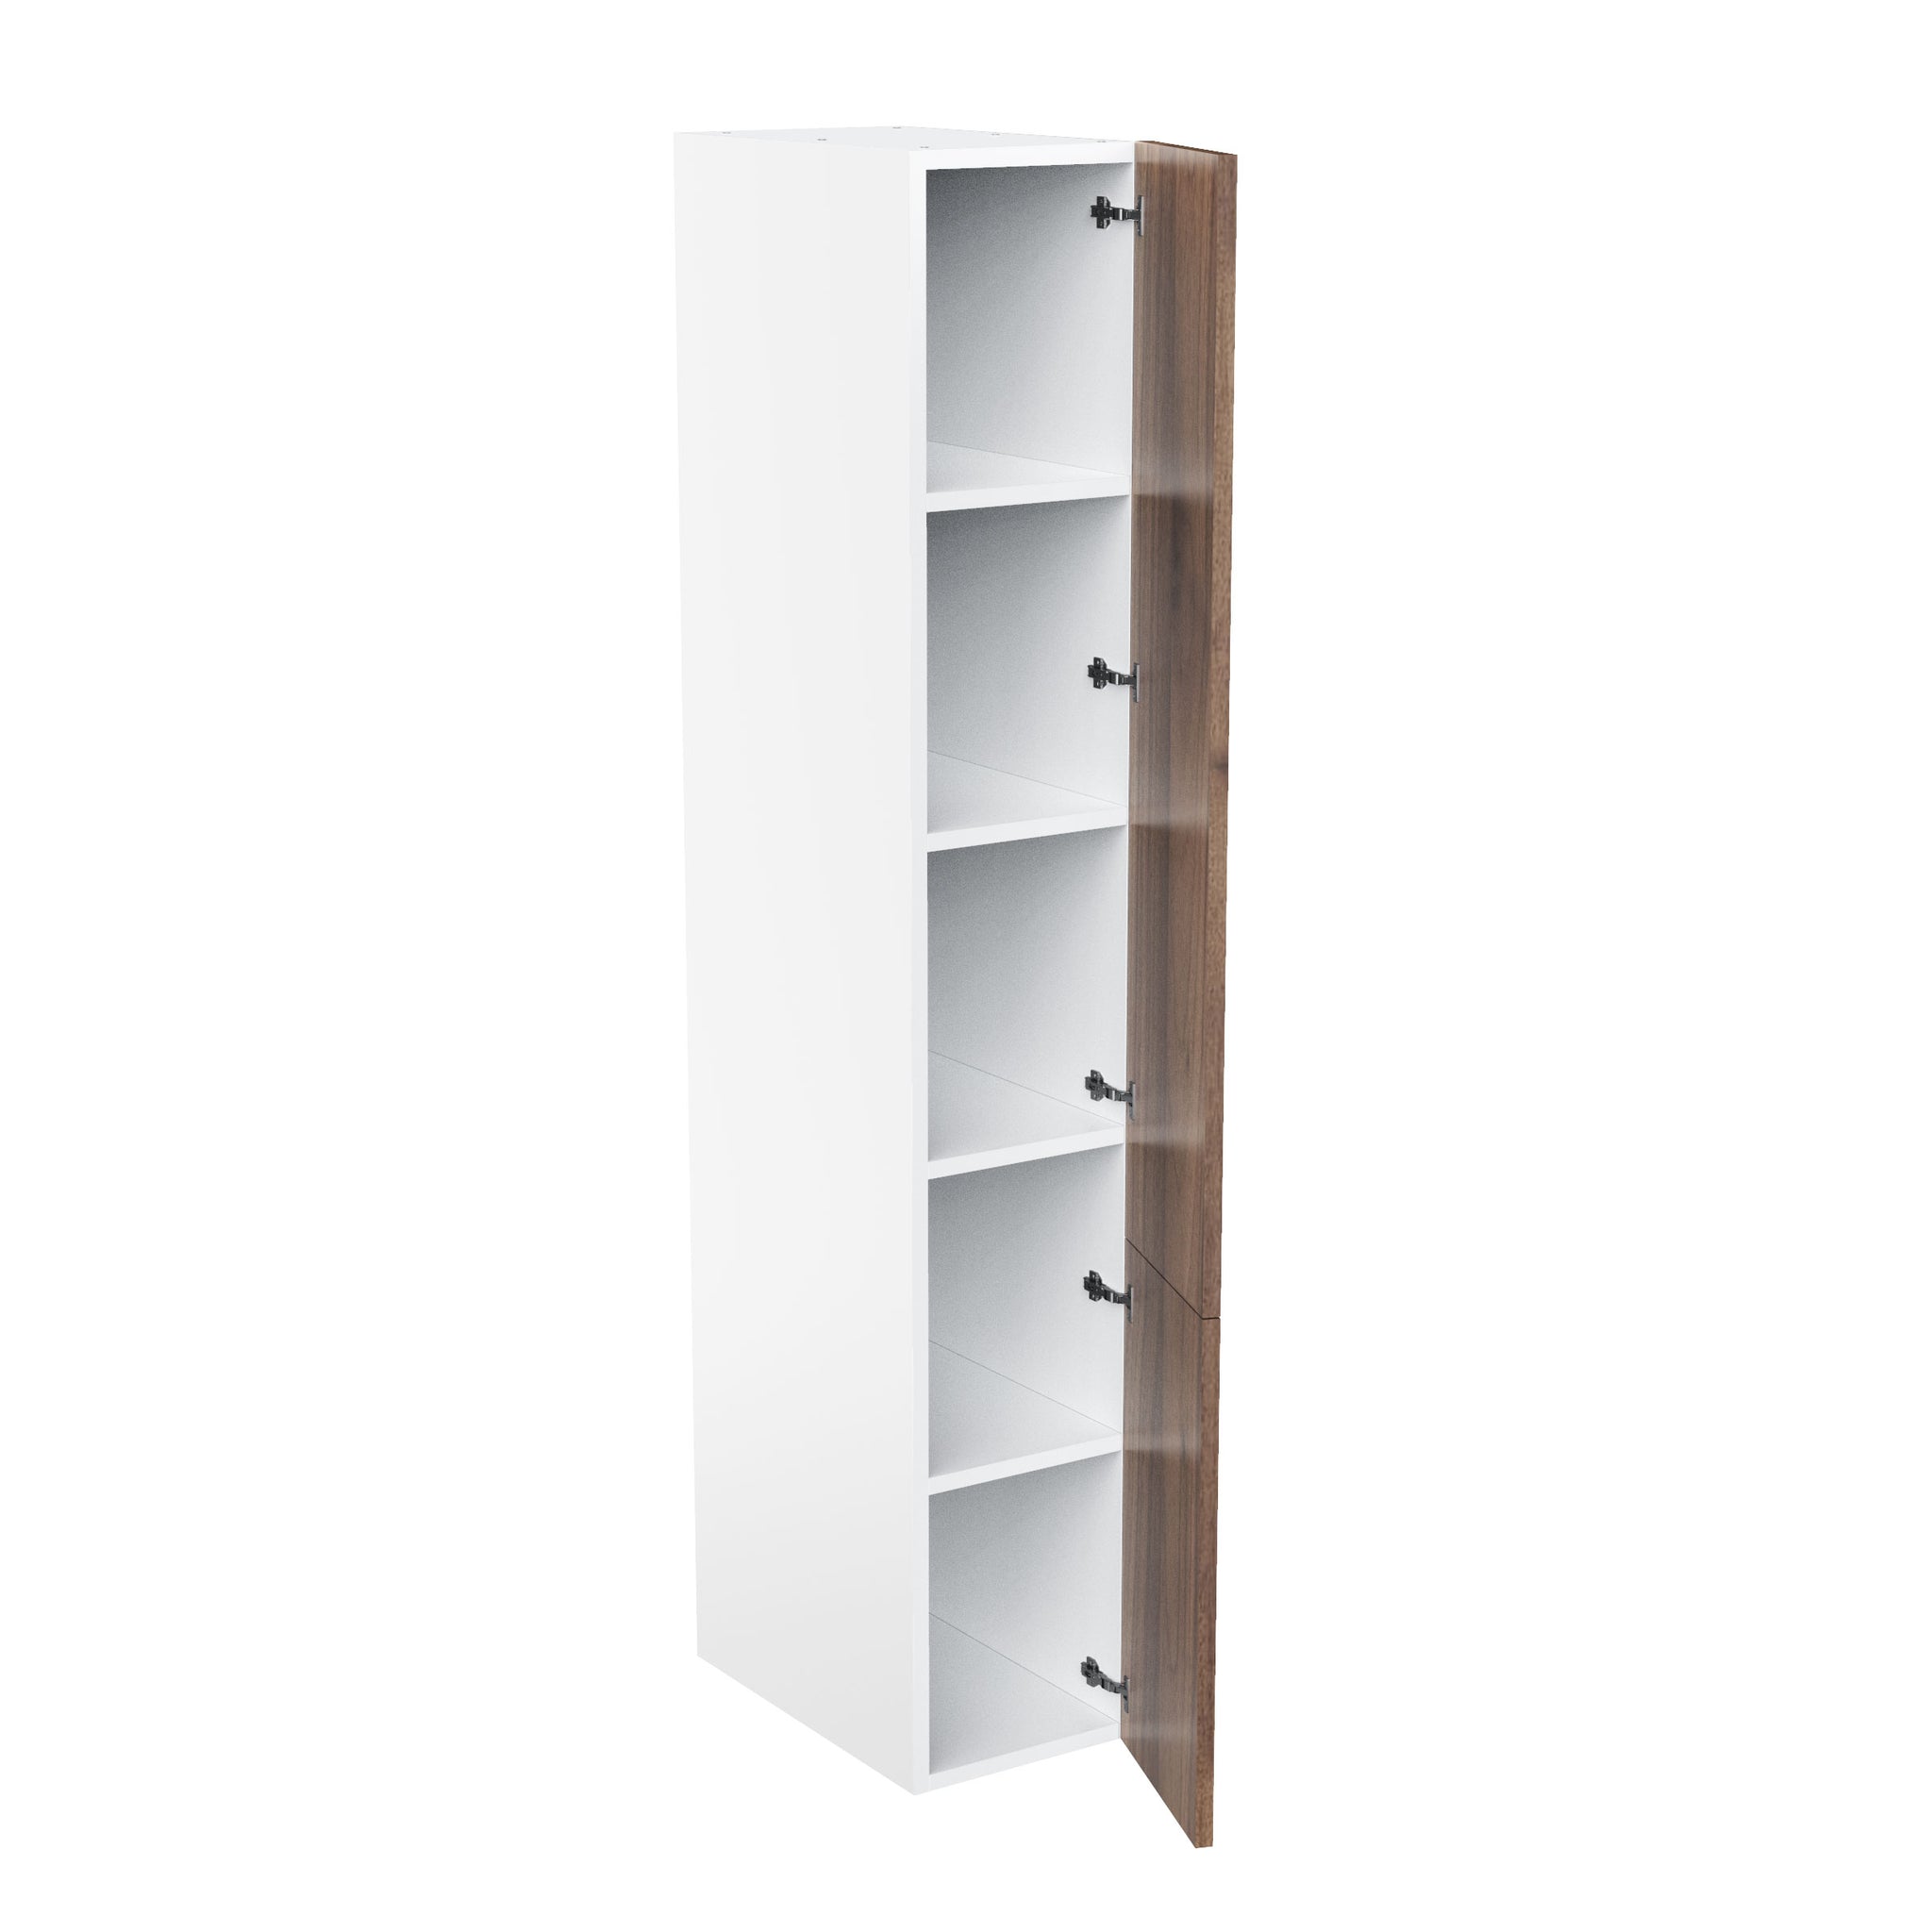 RTA - Walnut - Single Door Tall Cabinets | 15"W x 90"H x 23.8"D